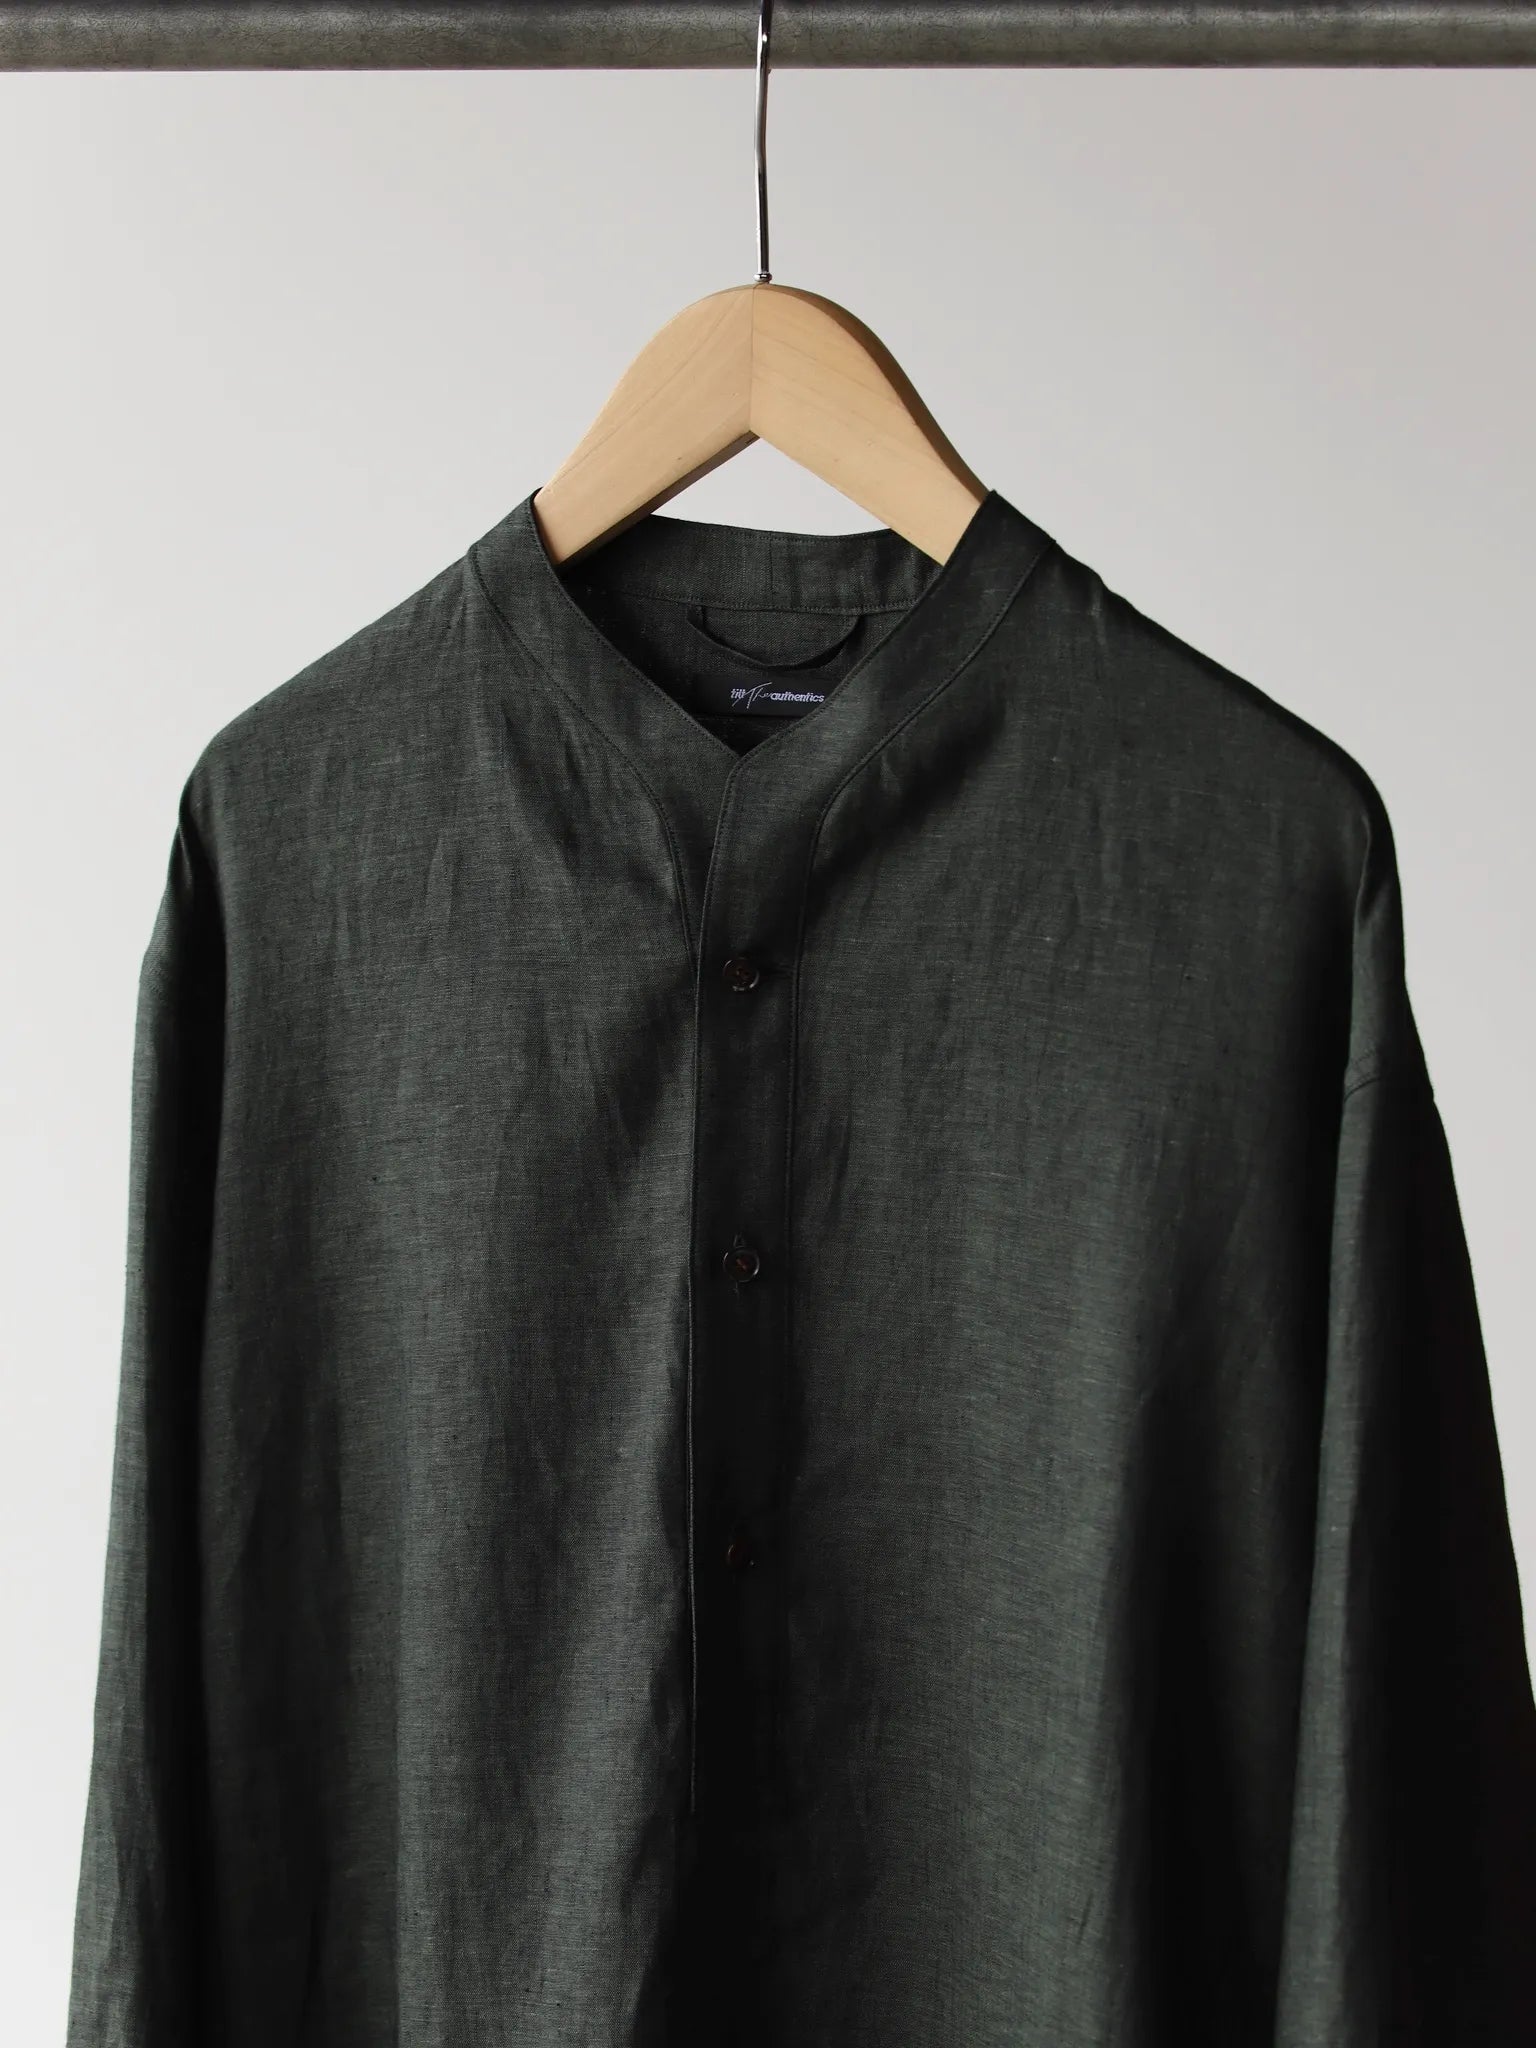 tilt-the-authentics-soft-linen-pullover-shirt-dark-green-3